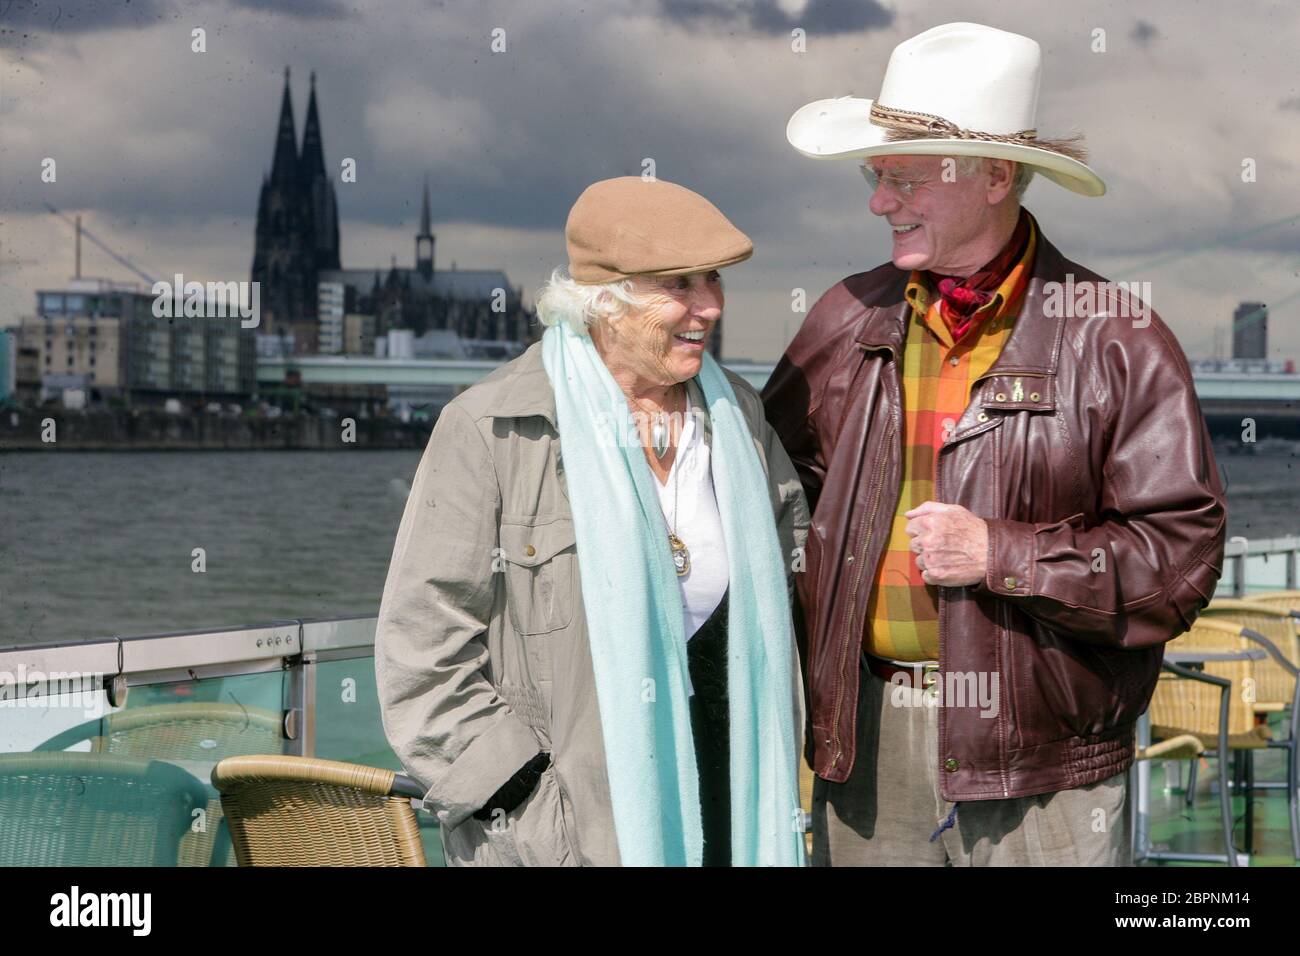 Larry Hagman - Rundfahrt auf dem Rhein - der US-americanischer Schauspieler Larry Hagman alias J. R. Ewing (Dallas) und seine Ehefau Maj Axelsson zu Besuch en Köln. Rundfahrt mit einem KD Schiff auf dem Rhein. Foto de stock